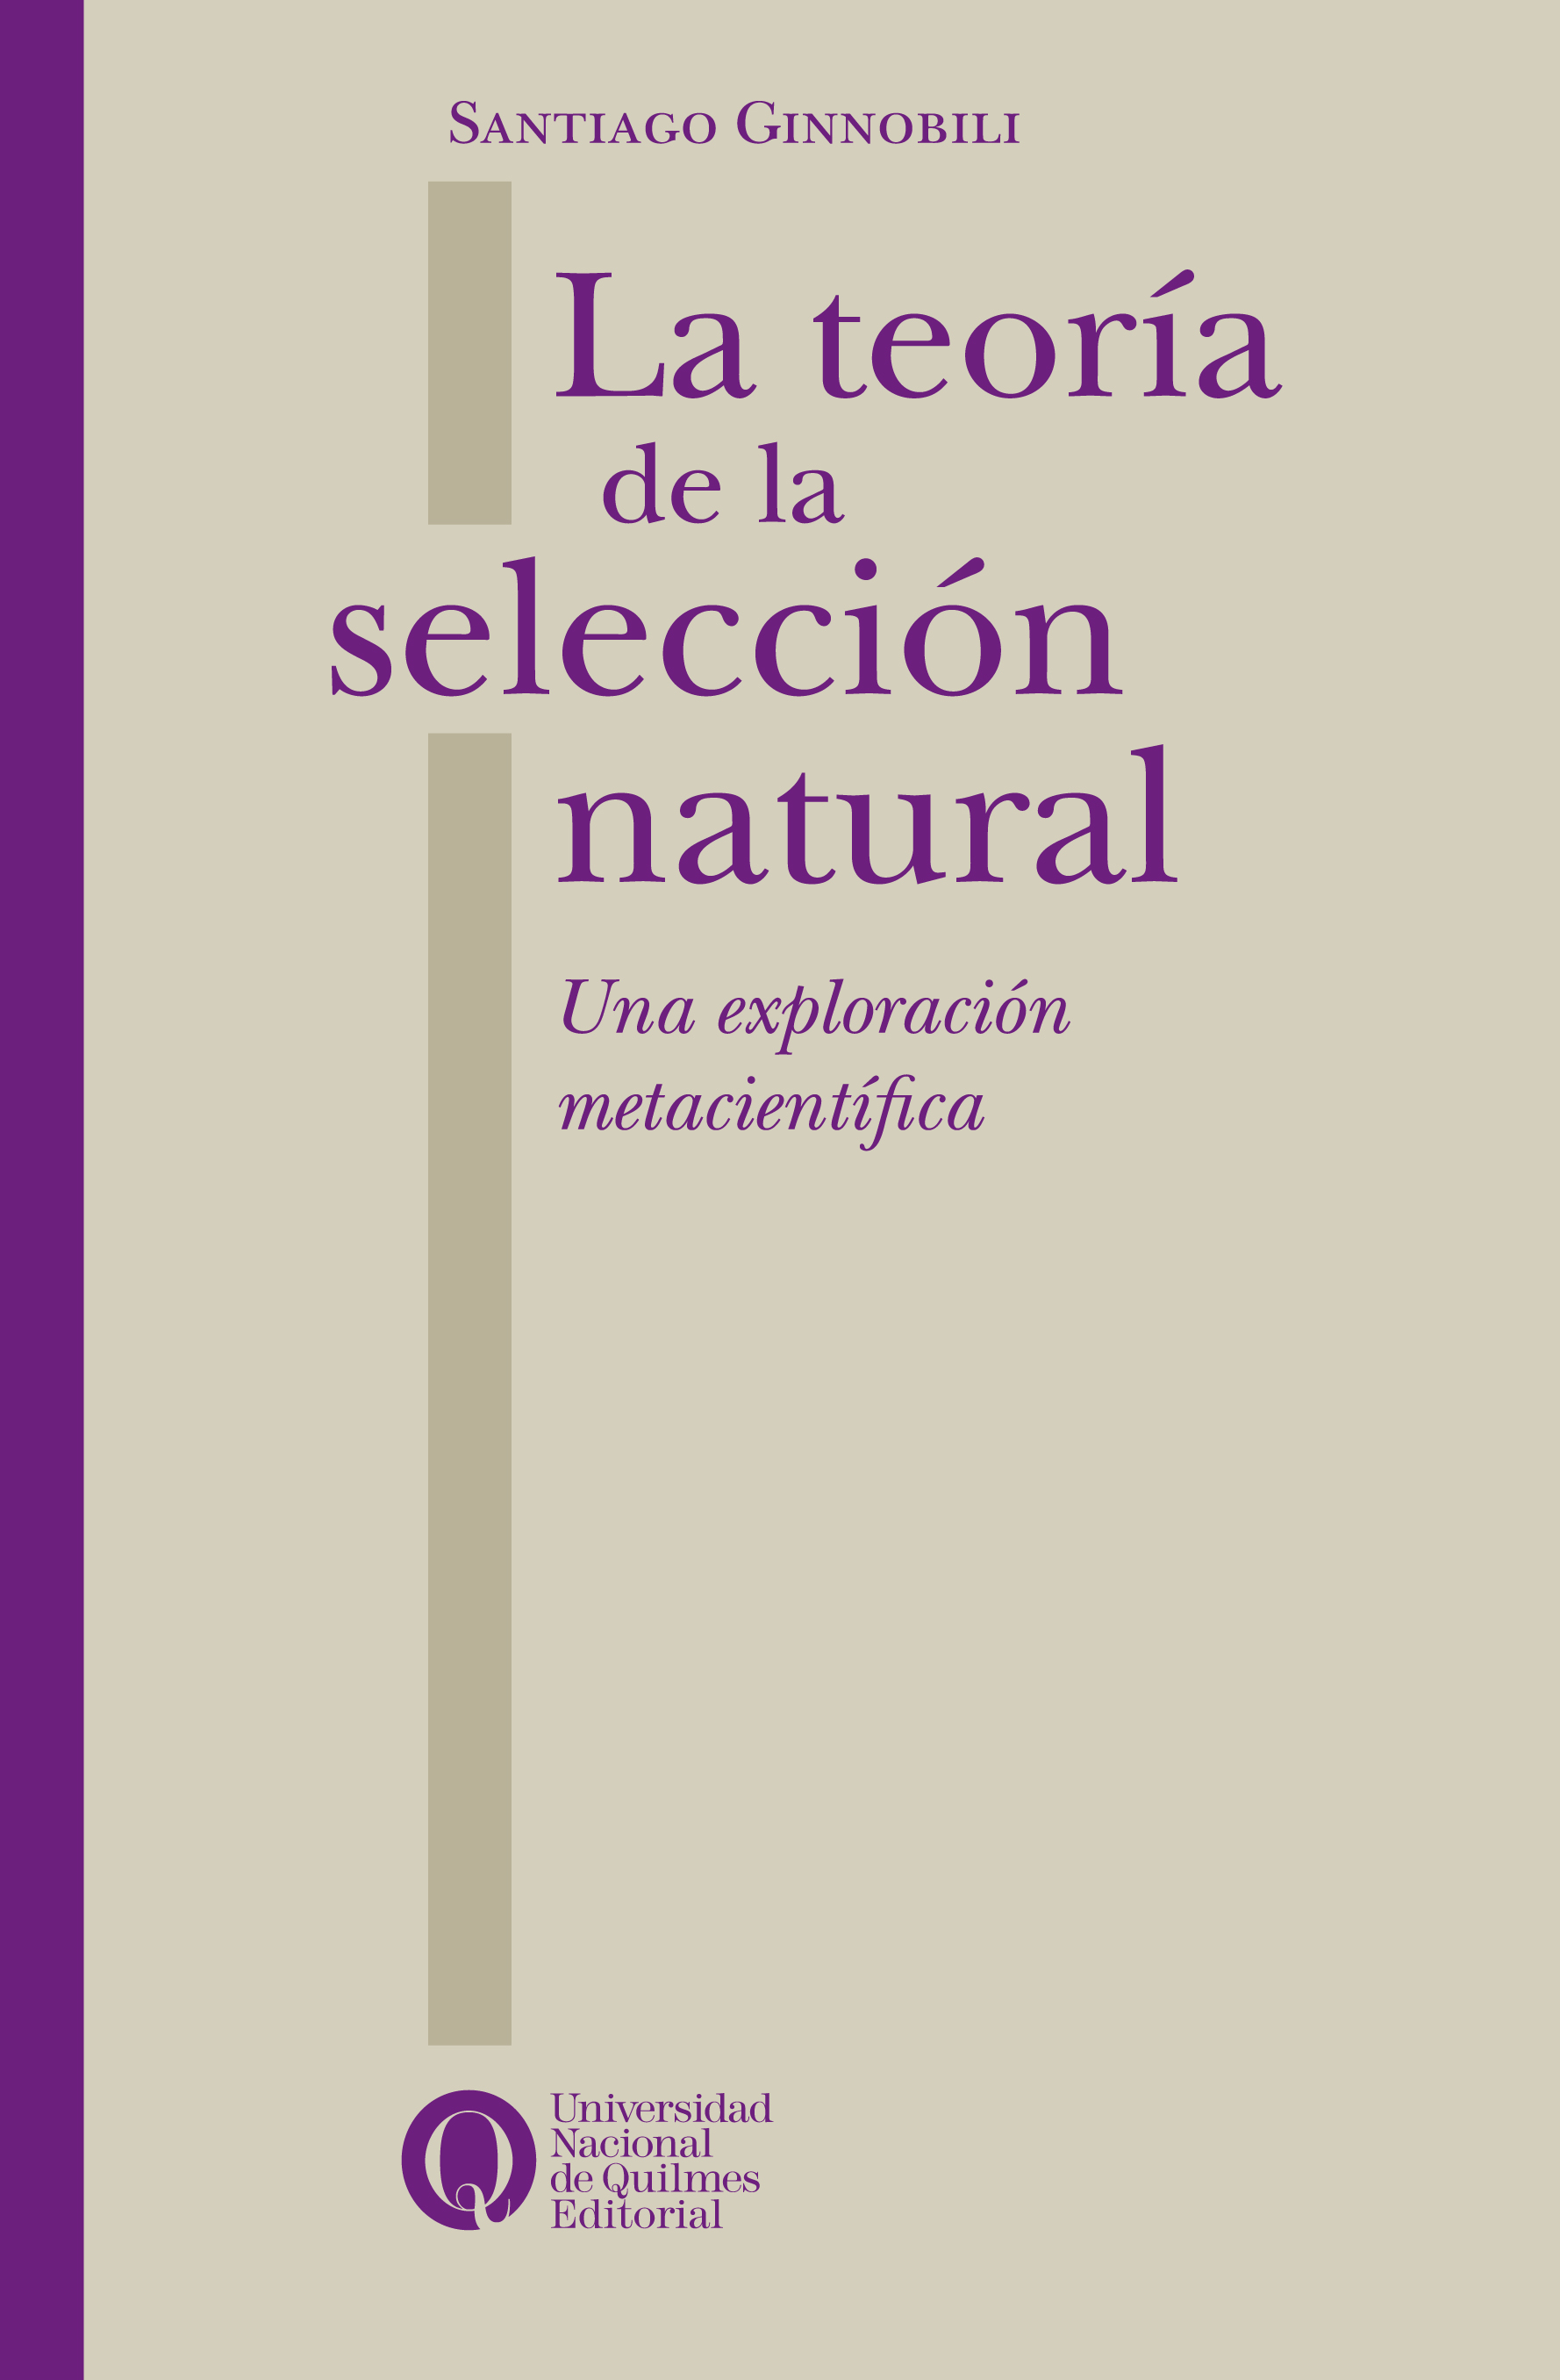 La teoría de la selección natural. Una exploración metacientífica, de Santiago Ginnobili